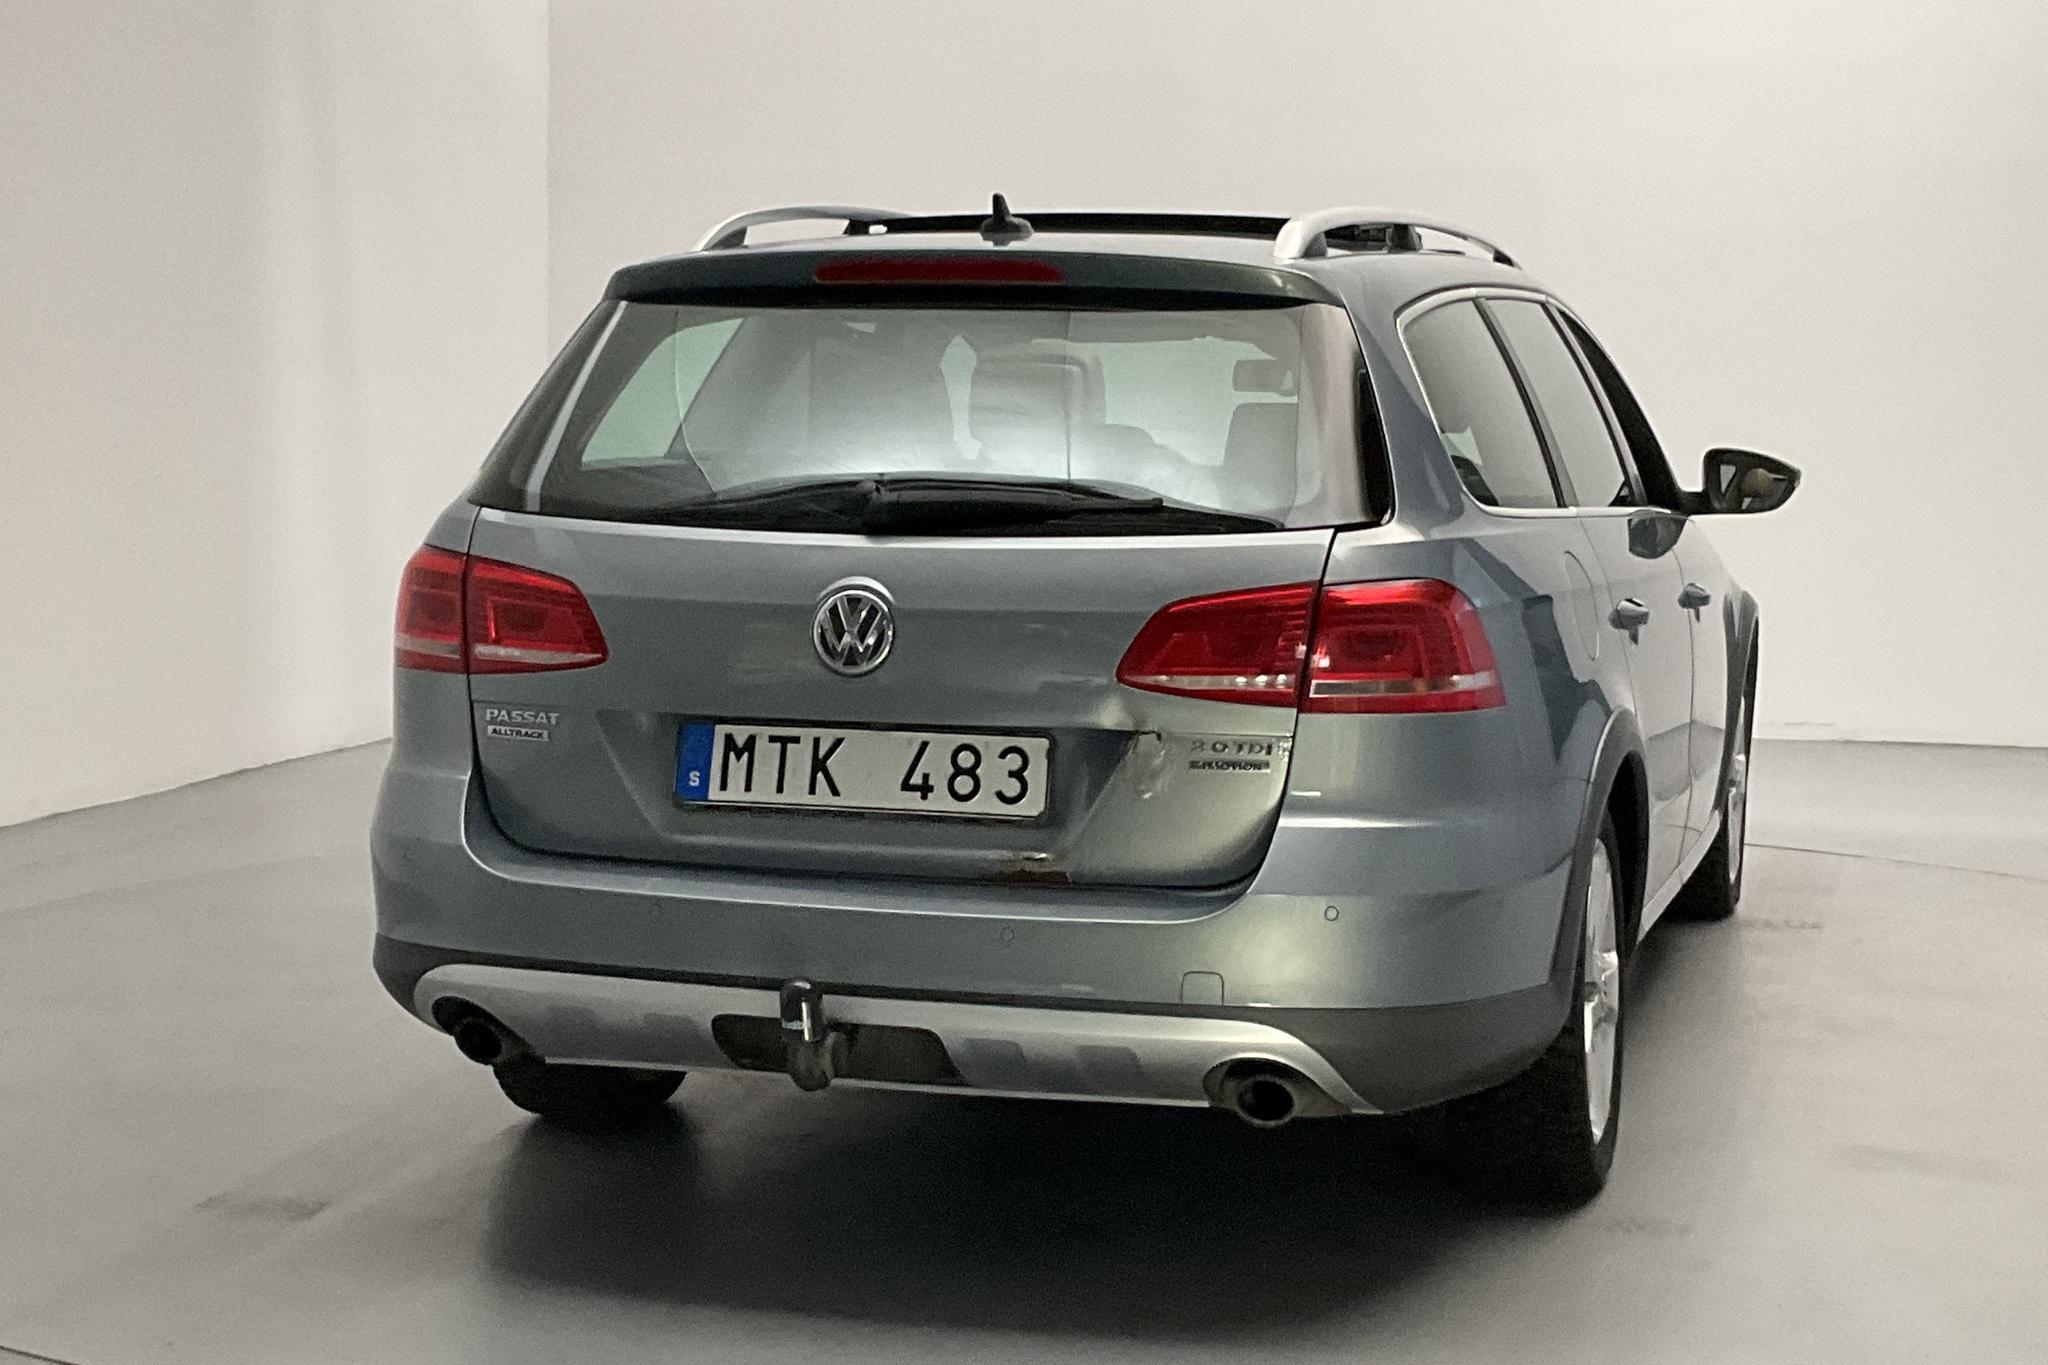 VW Passat Alltrack 2.0 TDI BlueMotion Technology 4Motion (170hk) - 140 980 km - Automatic - Light Grey - 2012